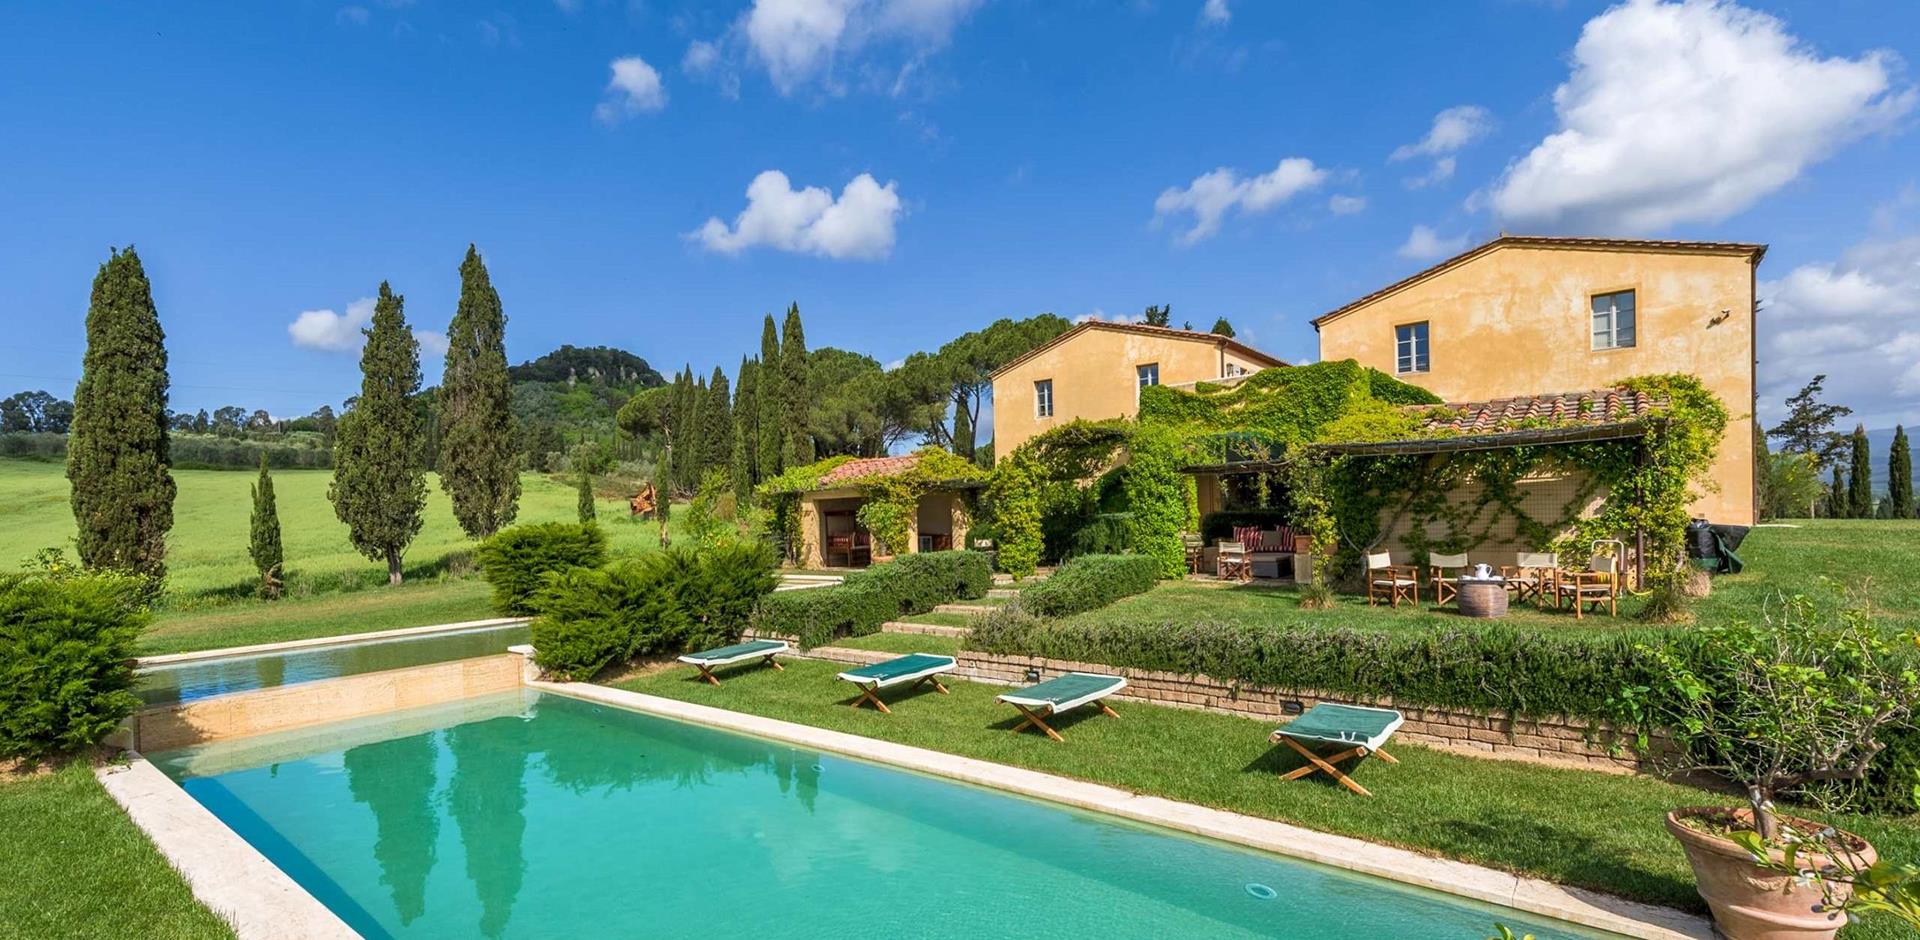 Pool, Casa Bell Aria, Tuscany, Italy